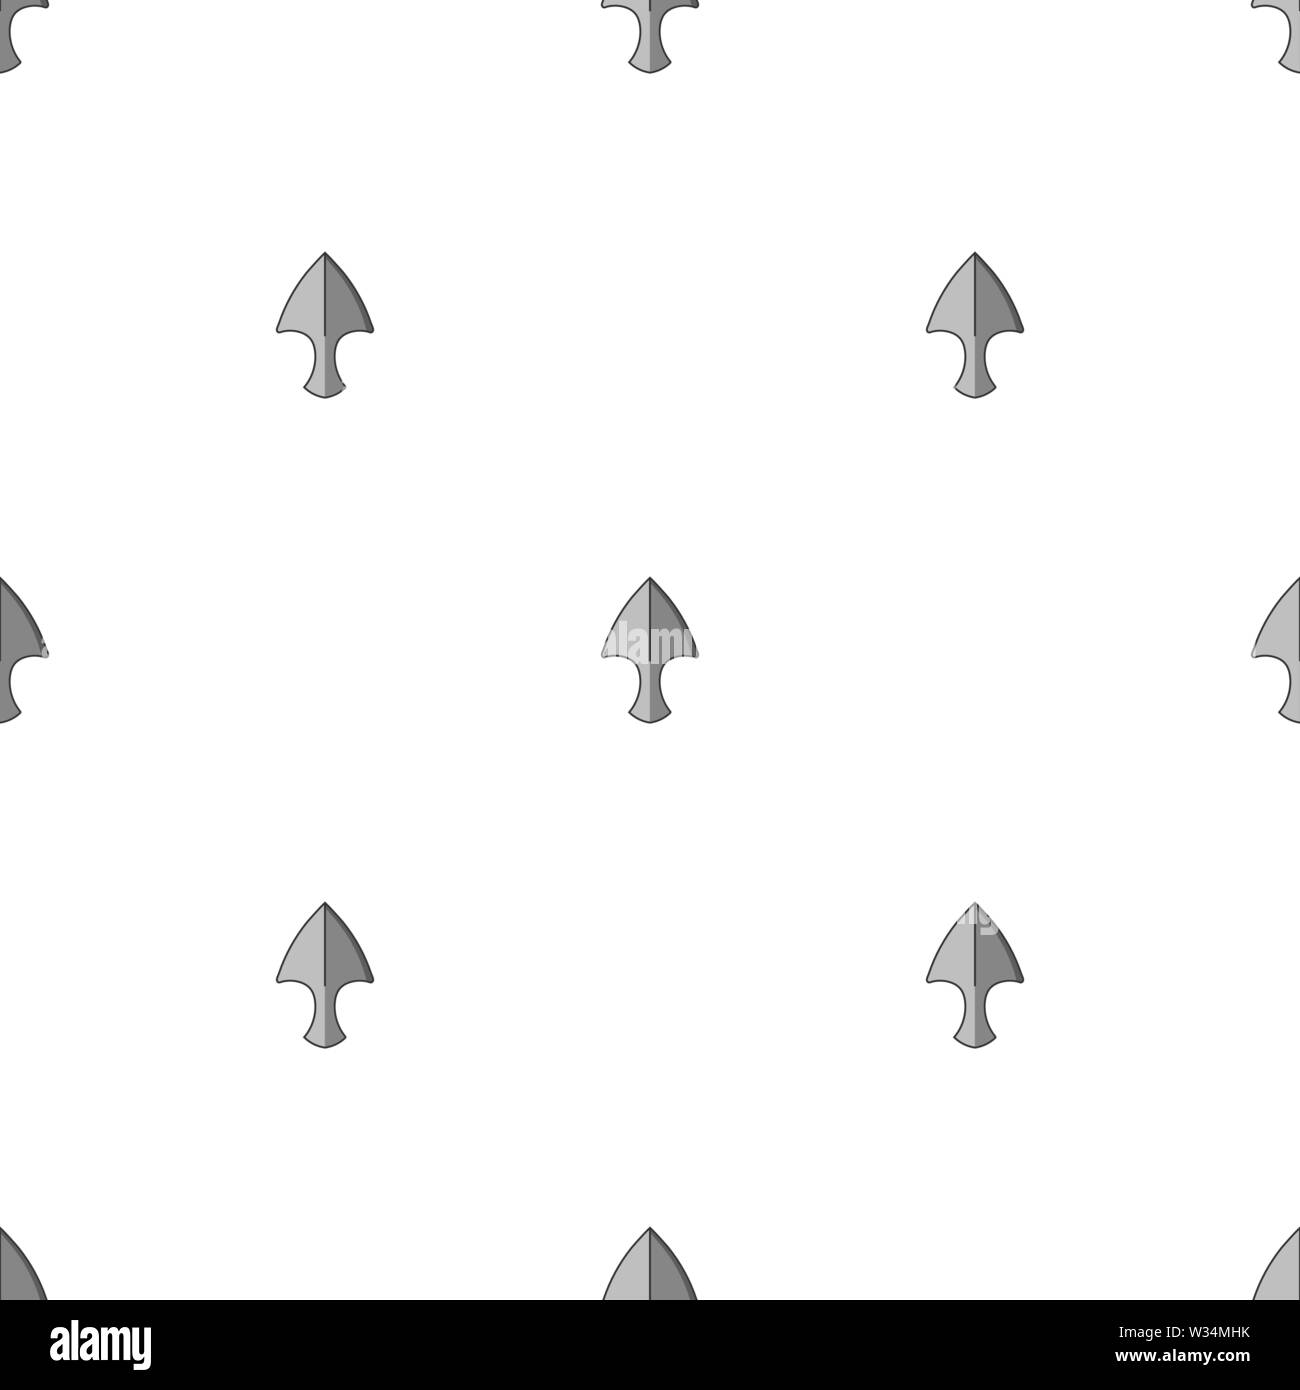 Nahtlose Muster mit wurfmesser Symbole. Ninja Waffe. Vector Illustration für Design, Web, Geschenkpapier, Textilien, Tapeten. Stock Vektor